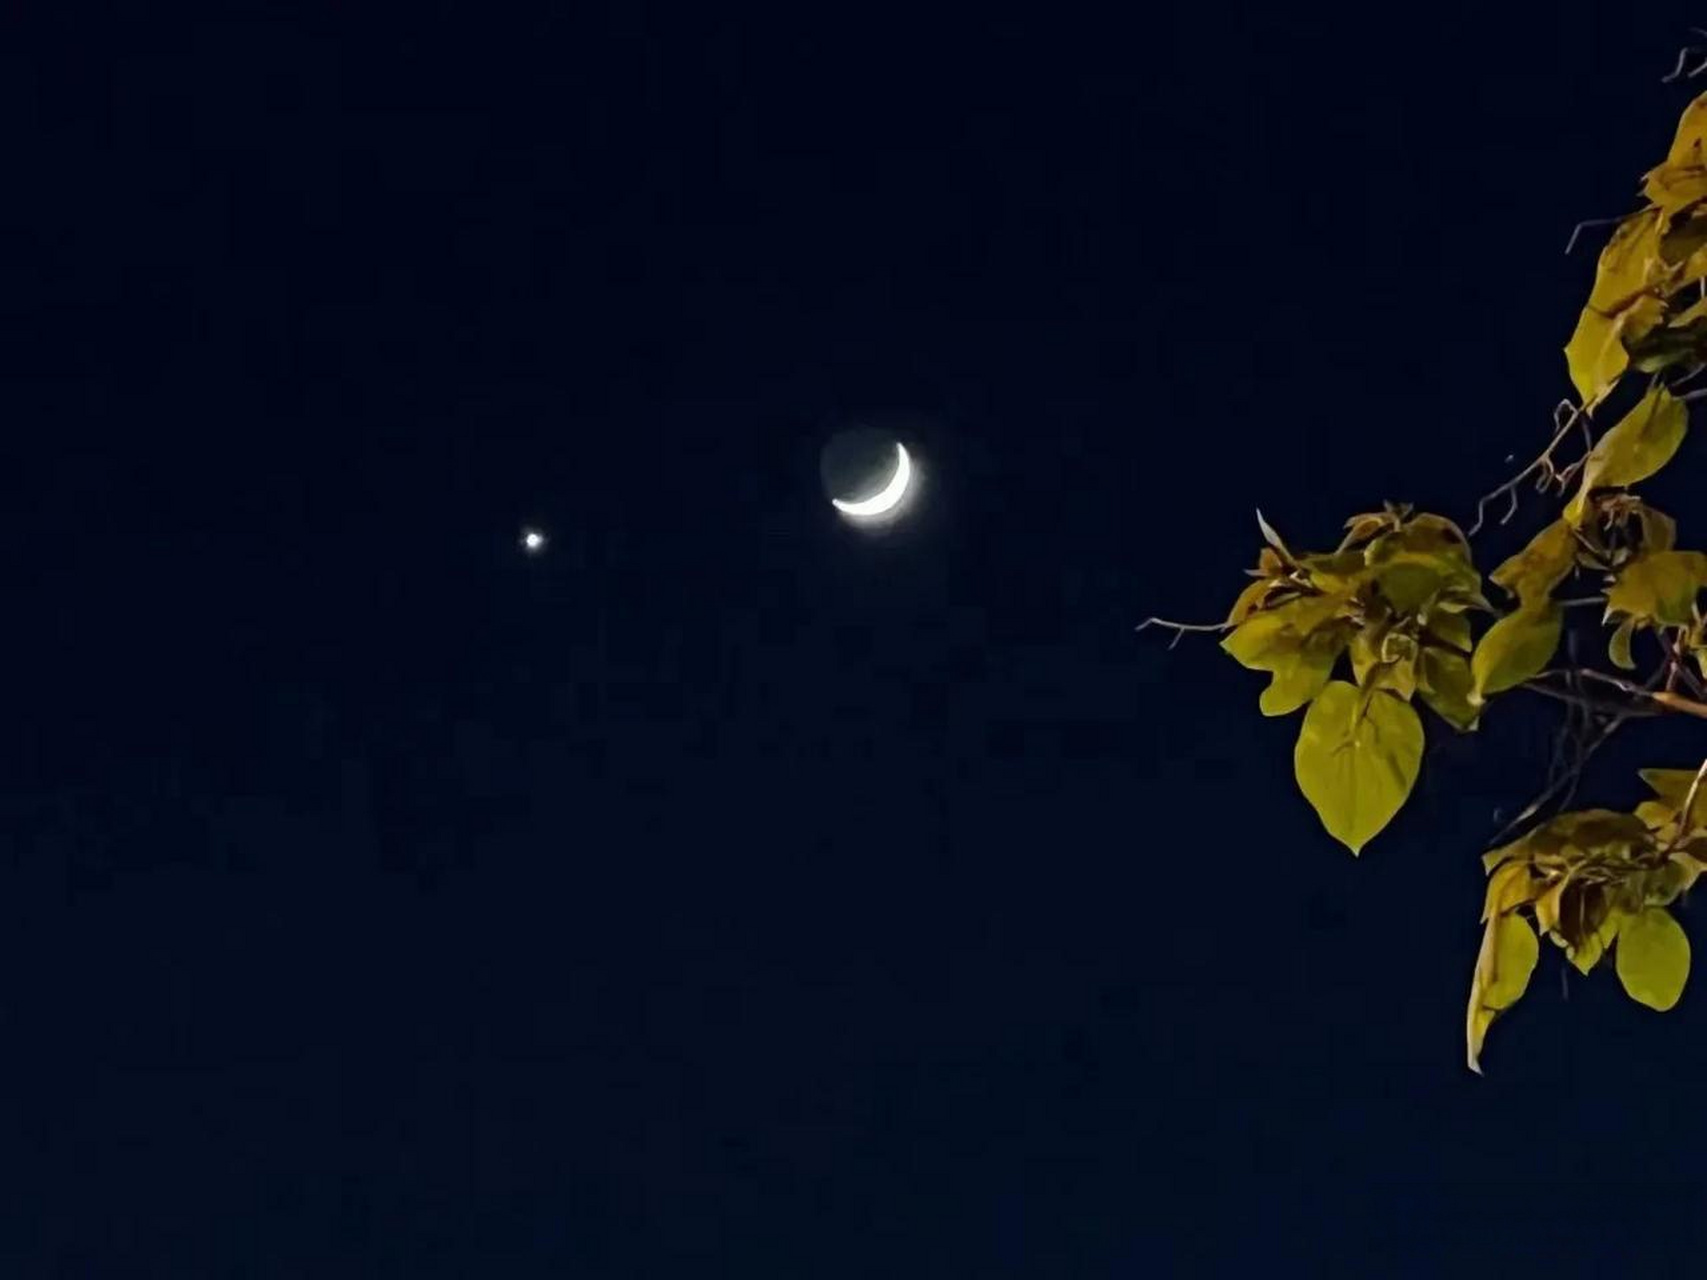 今晚金星伴月,其星分外闪亮,象学为:主兵戈相战不